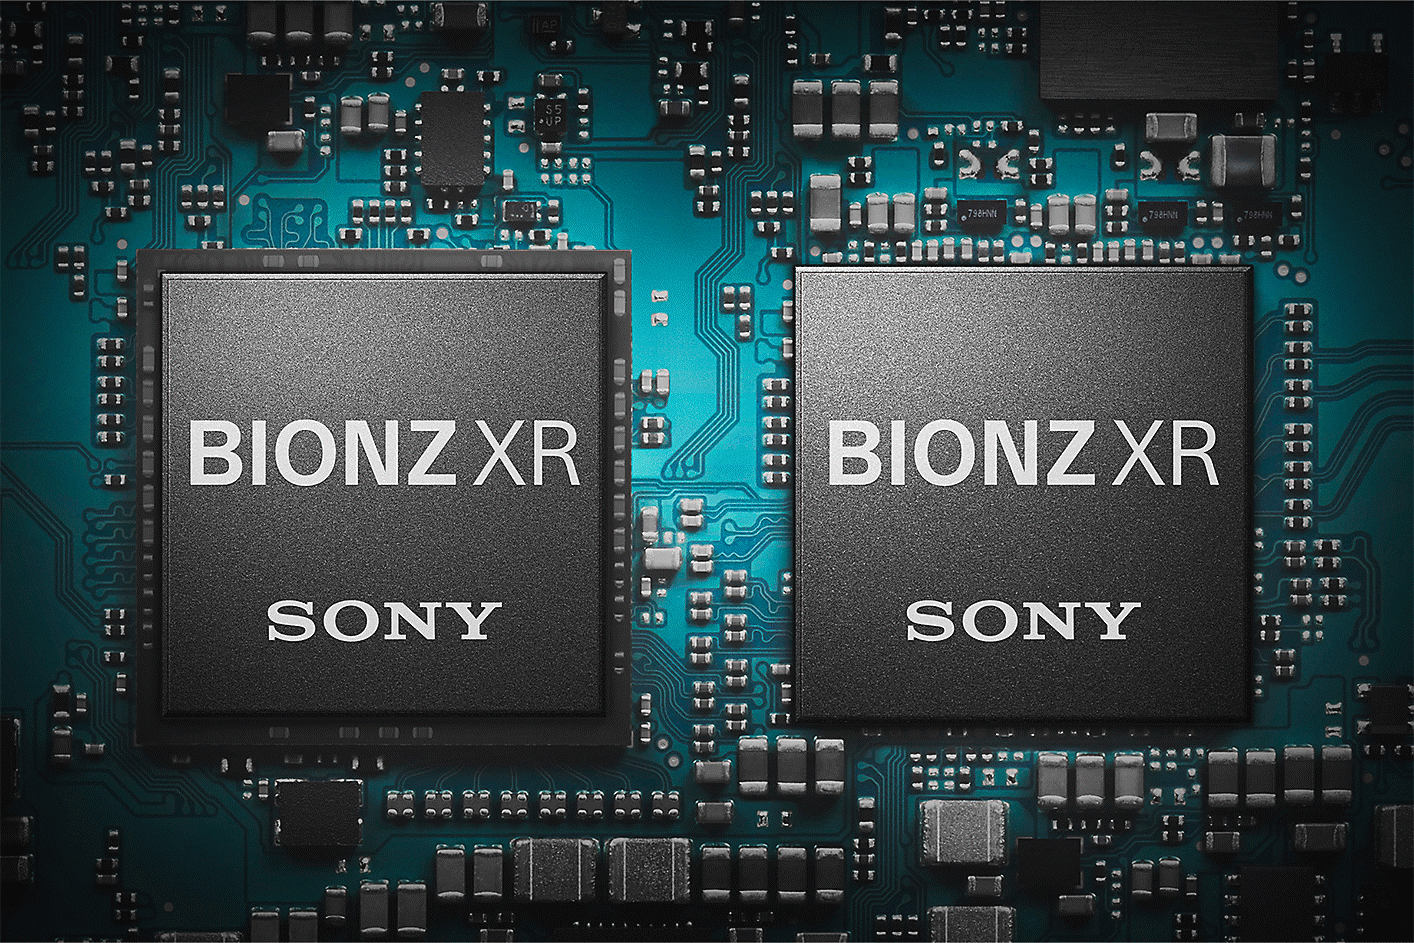 صورة فوتوغرافية لمحرك معالجة الصور BIONZ XR